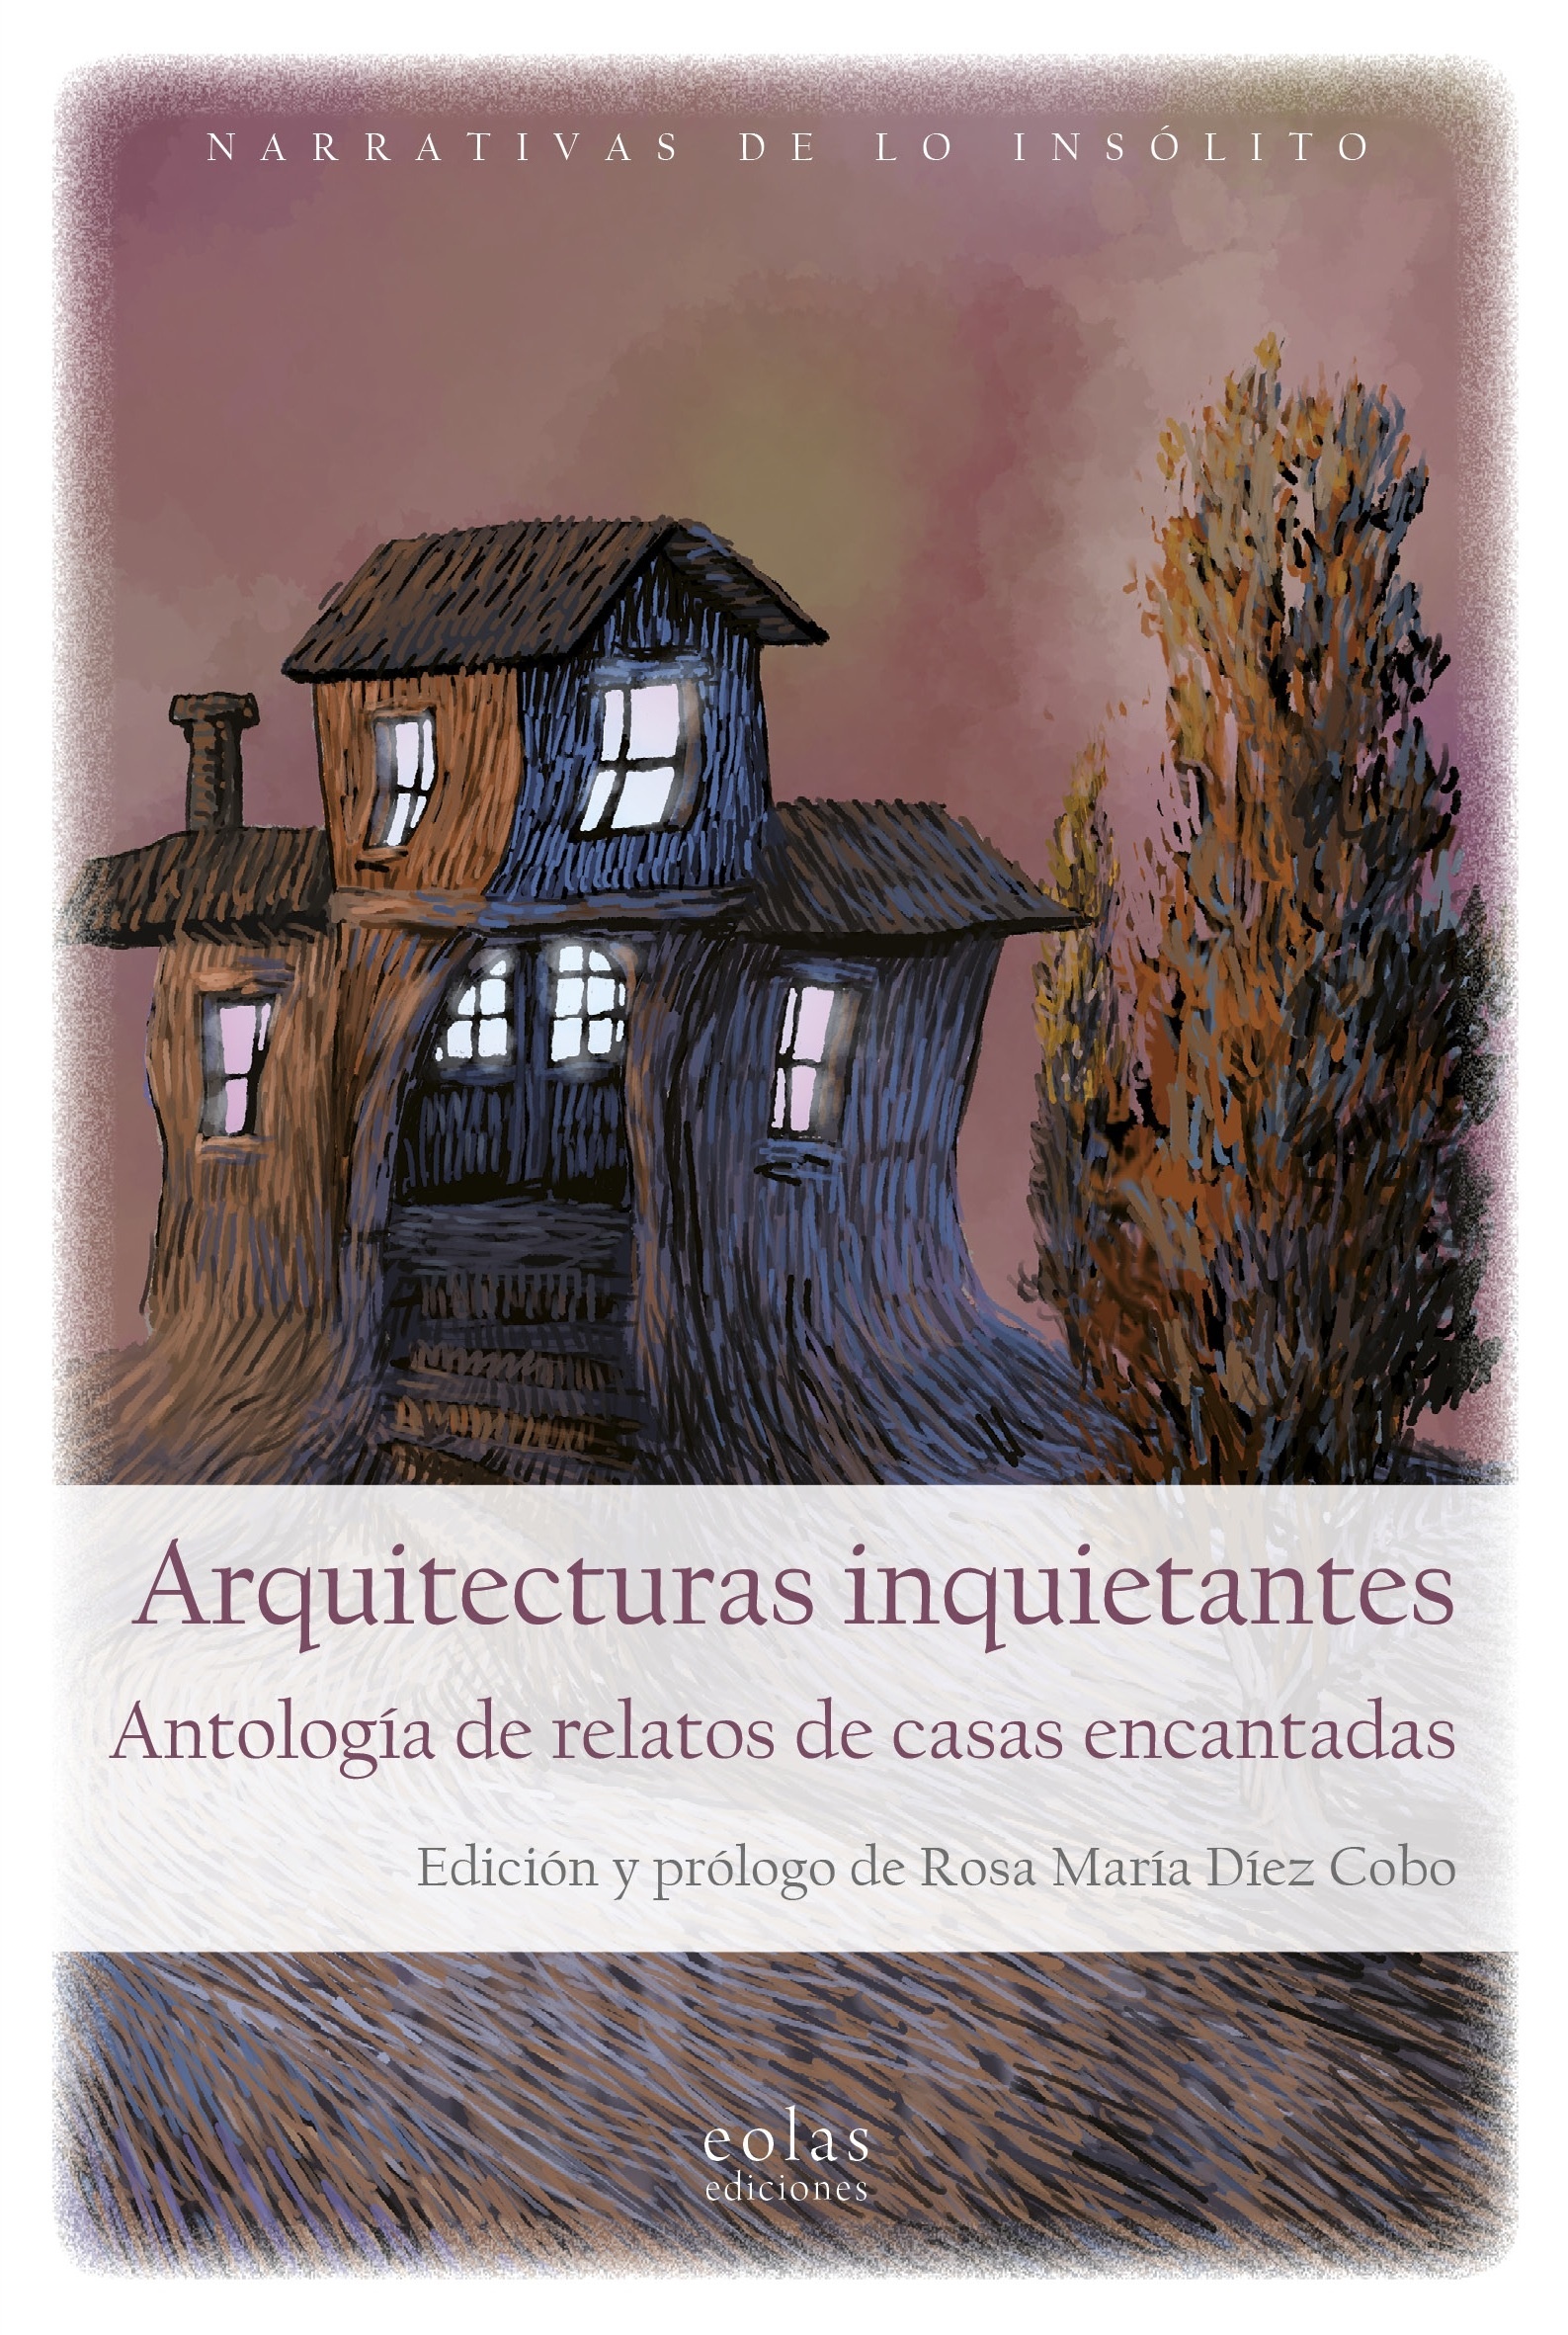 Arquitecturas inquietantes "Antología de relatos de casas encantadas". 